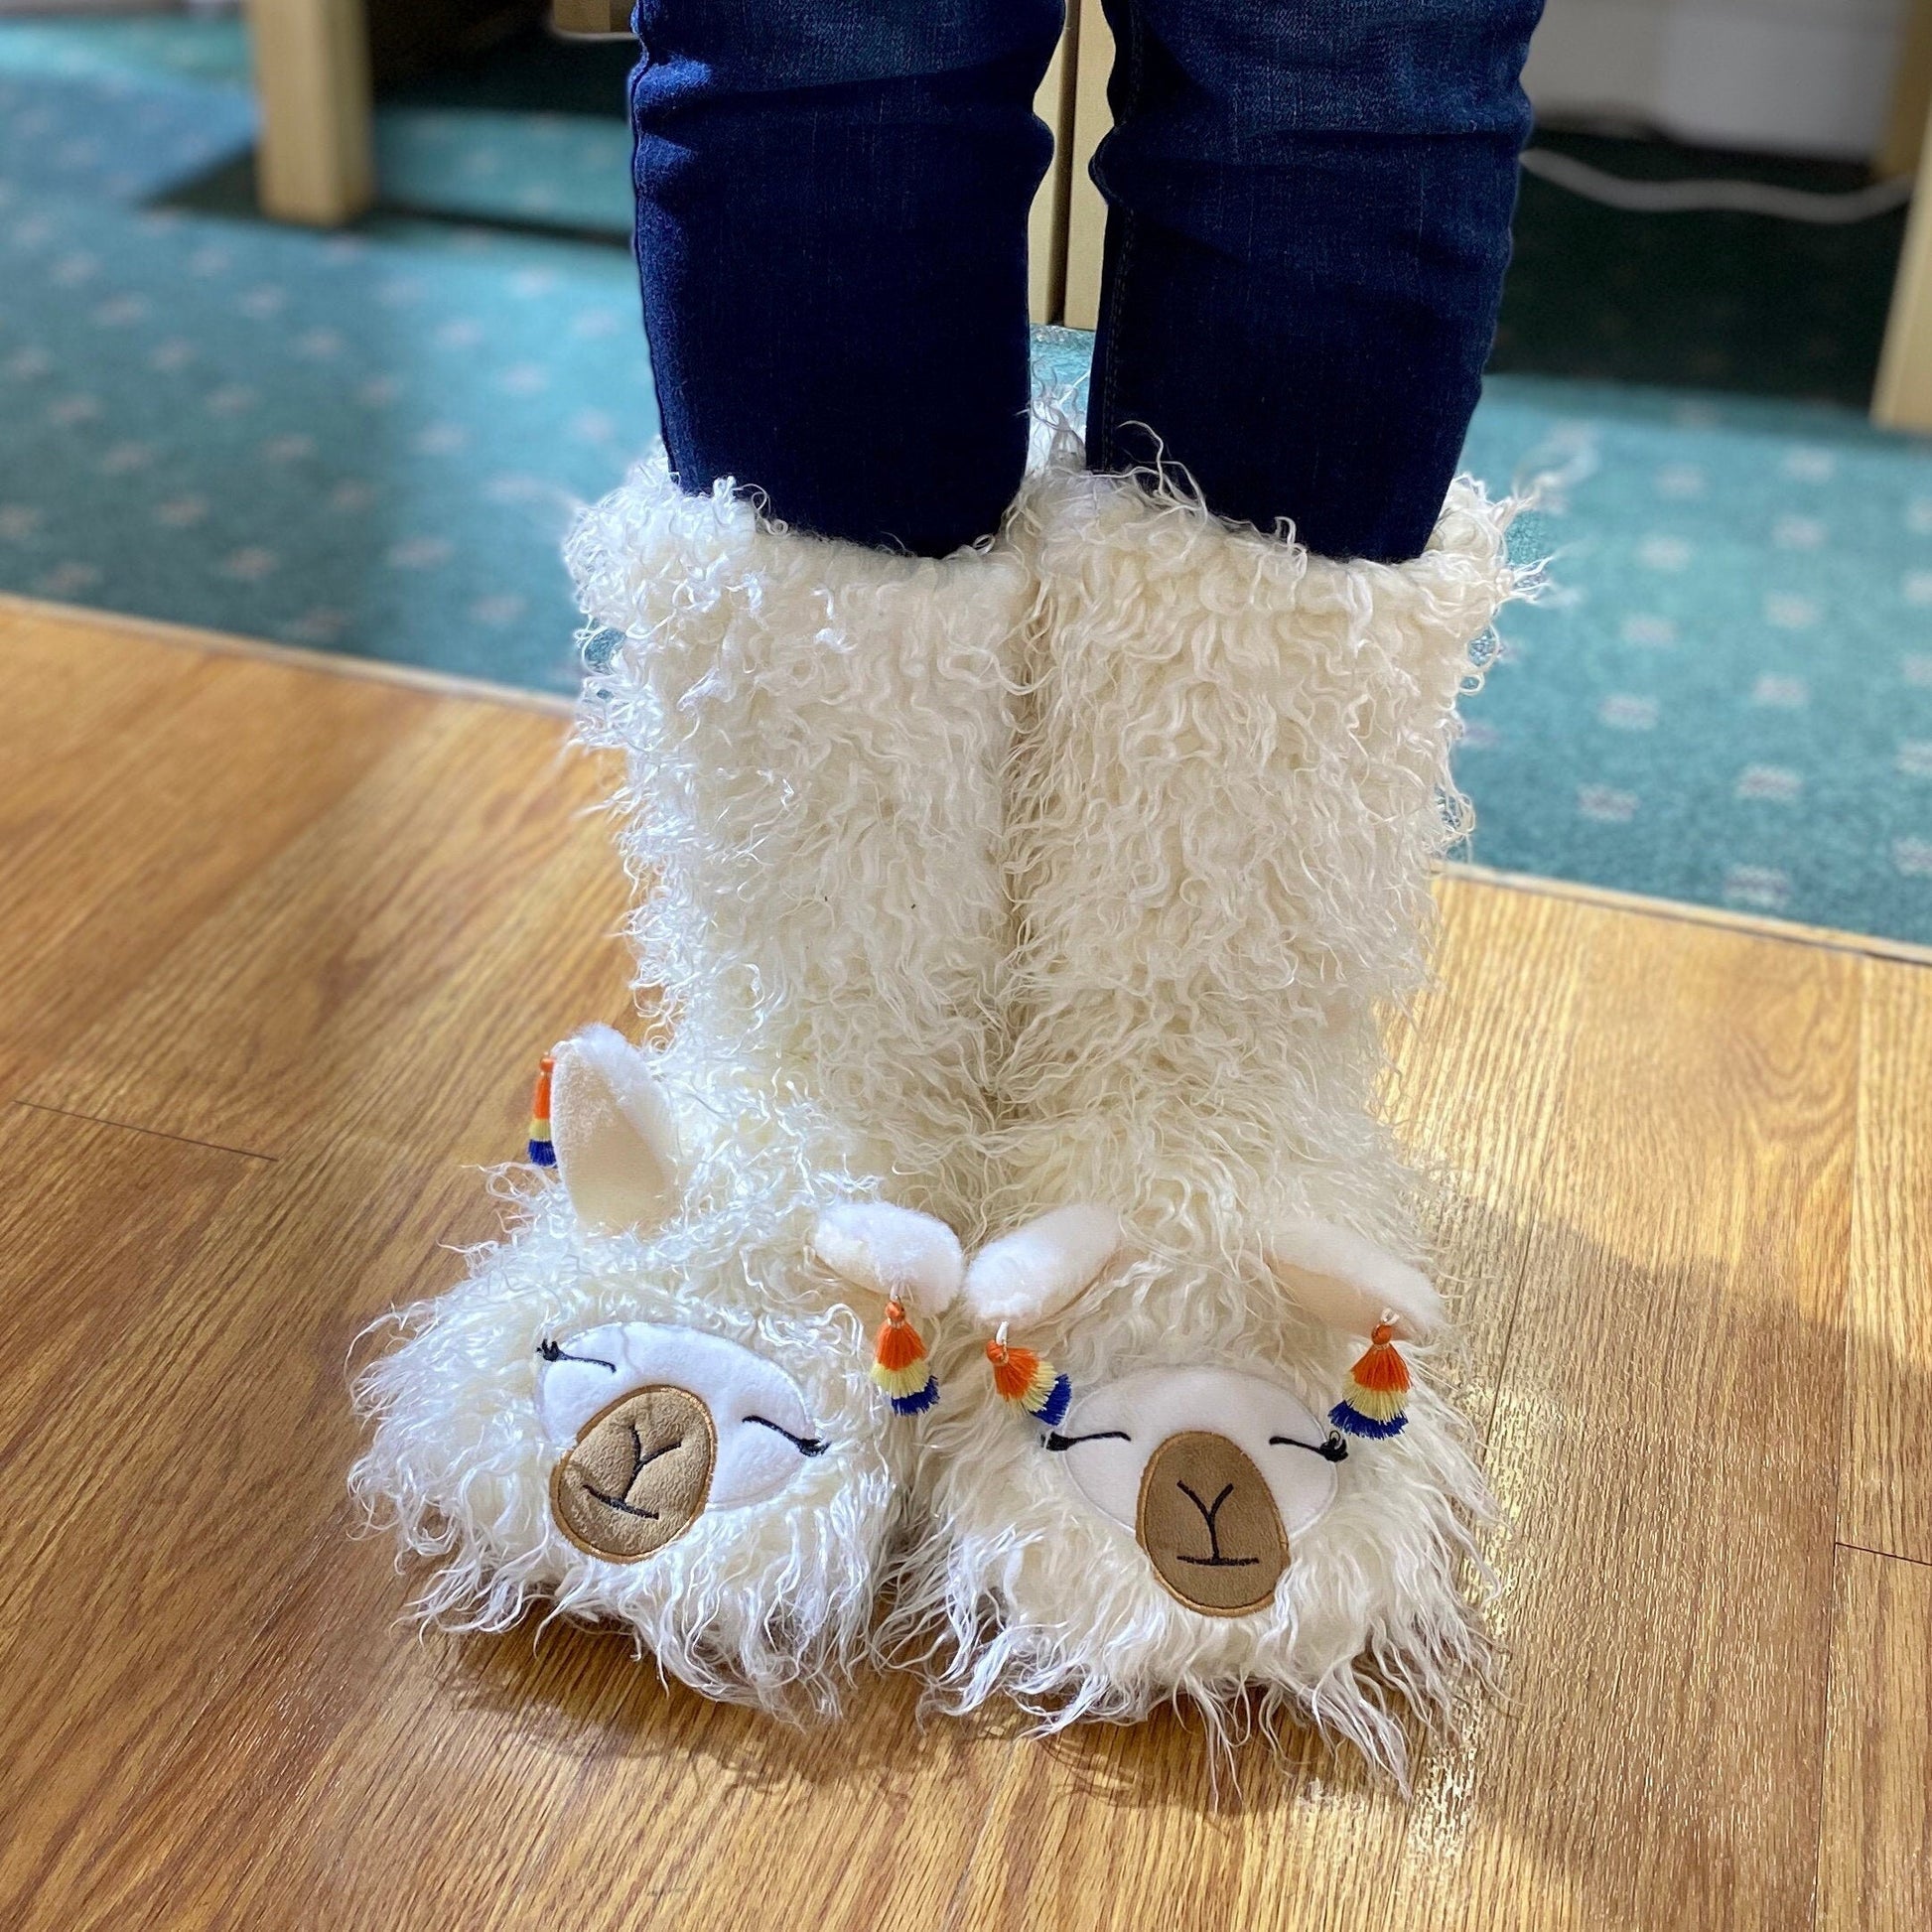 Fuzzy Cozy Warm Llama Slippers - White Plush Sherpa Slipper Socks